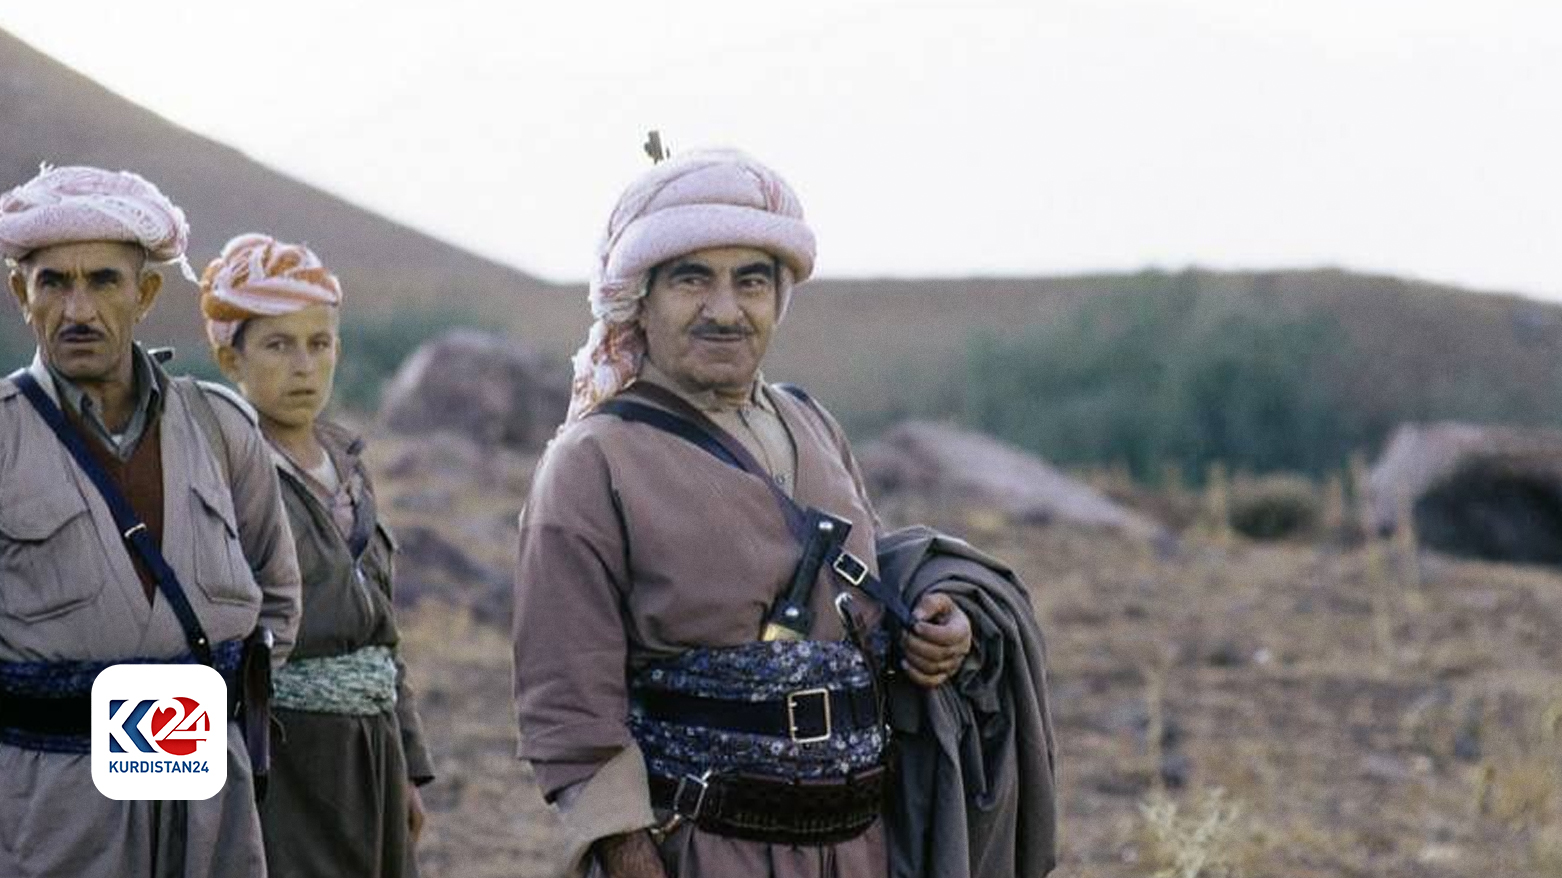 ملا مصطفی بارزانی، رهبر جنبش رهایی‌بخش مردم کوردستان